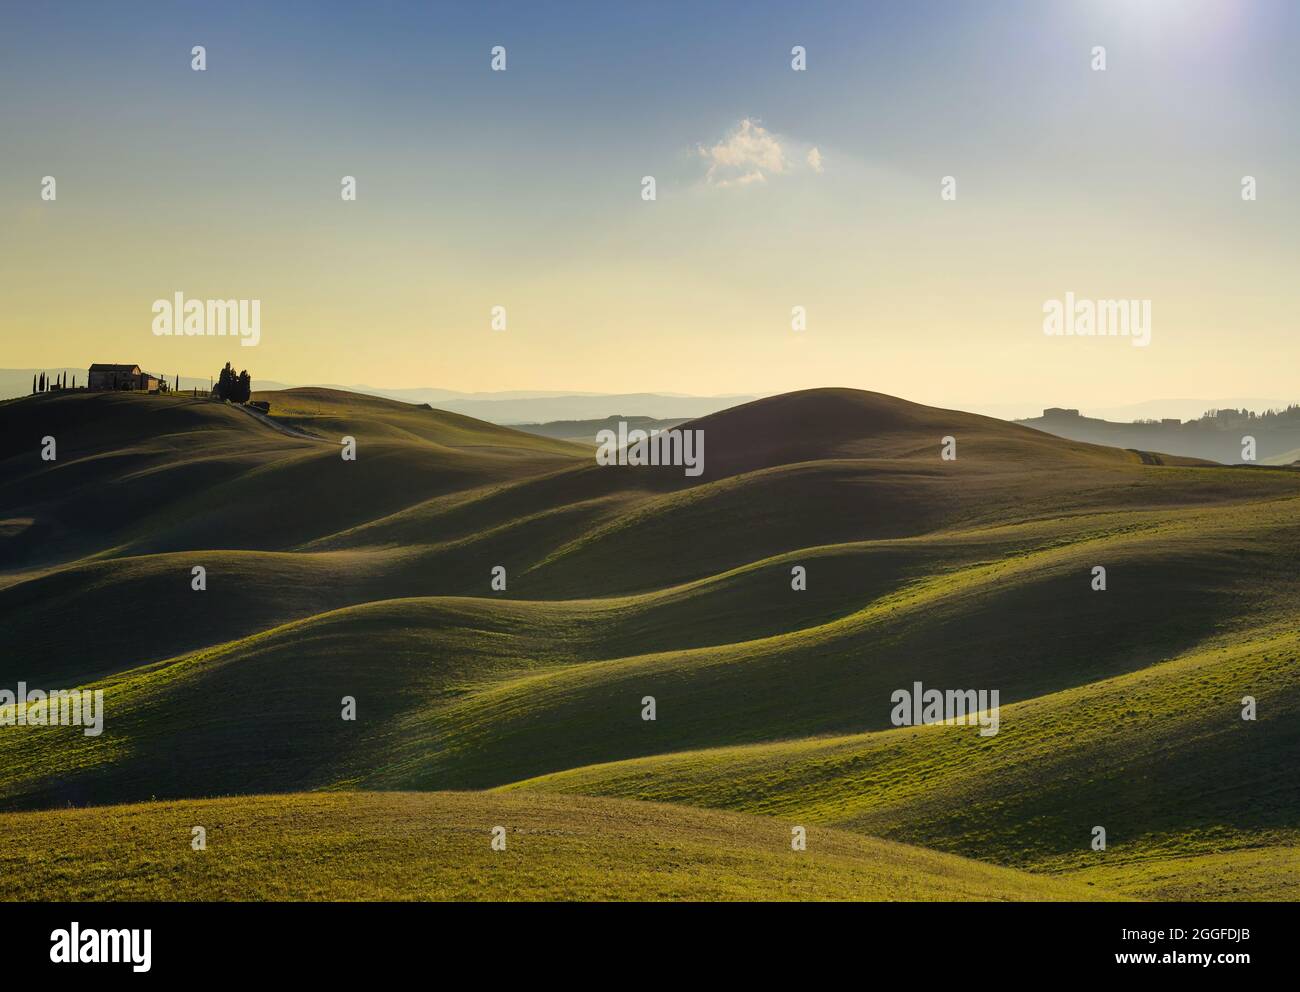 Toskana, Landschaft im Land der Crete Senesi. Rolling Hills, Landschaft Bauernhof, grünen Wiese auf warmen Sonnenuntergang. Siena, Italien, Europa. Stockfoto